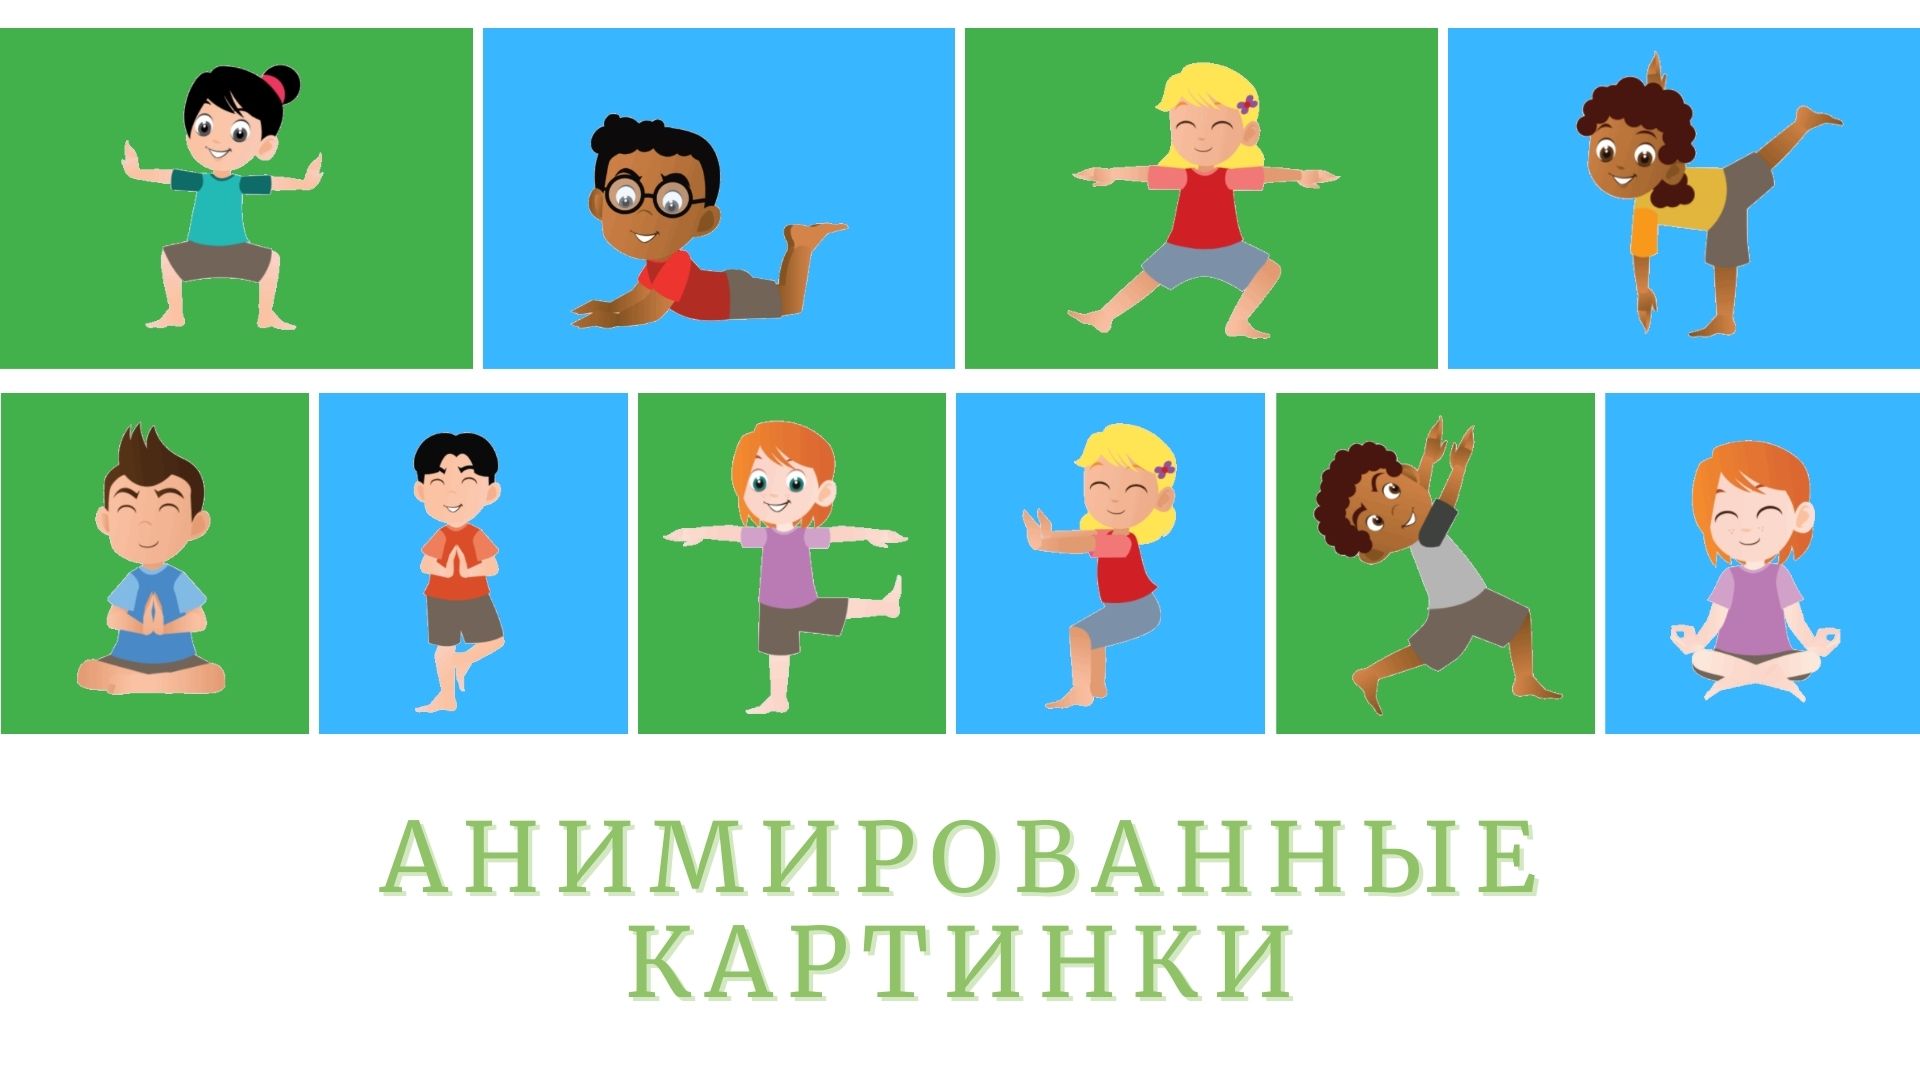 Йога для детей | Анимированные картинки | Футажи на зеленом фоне